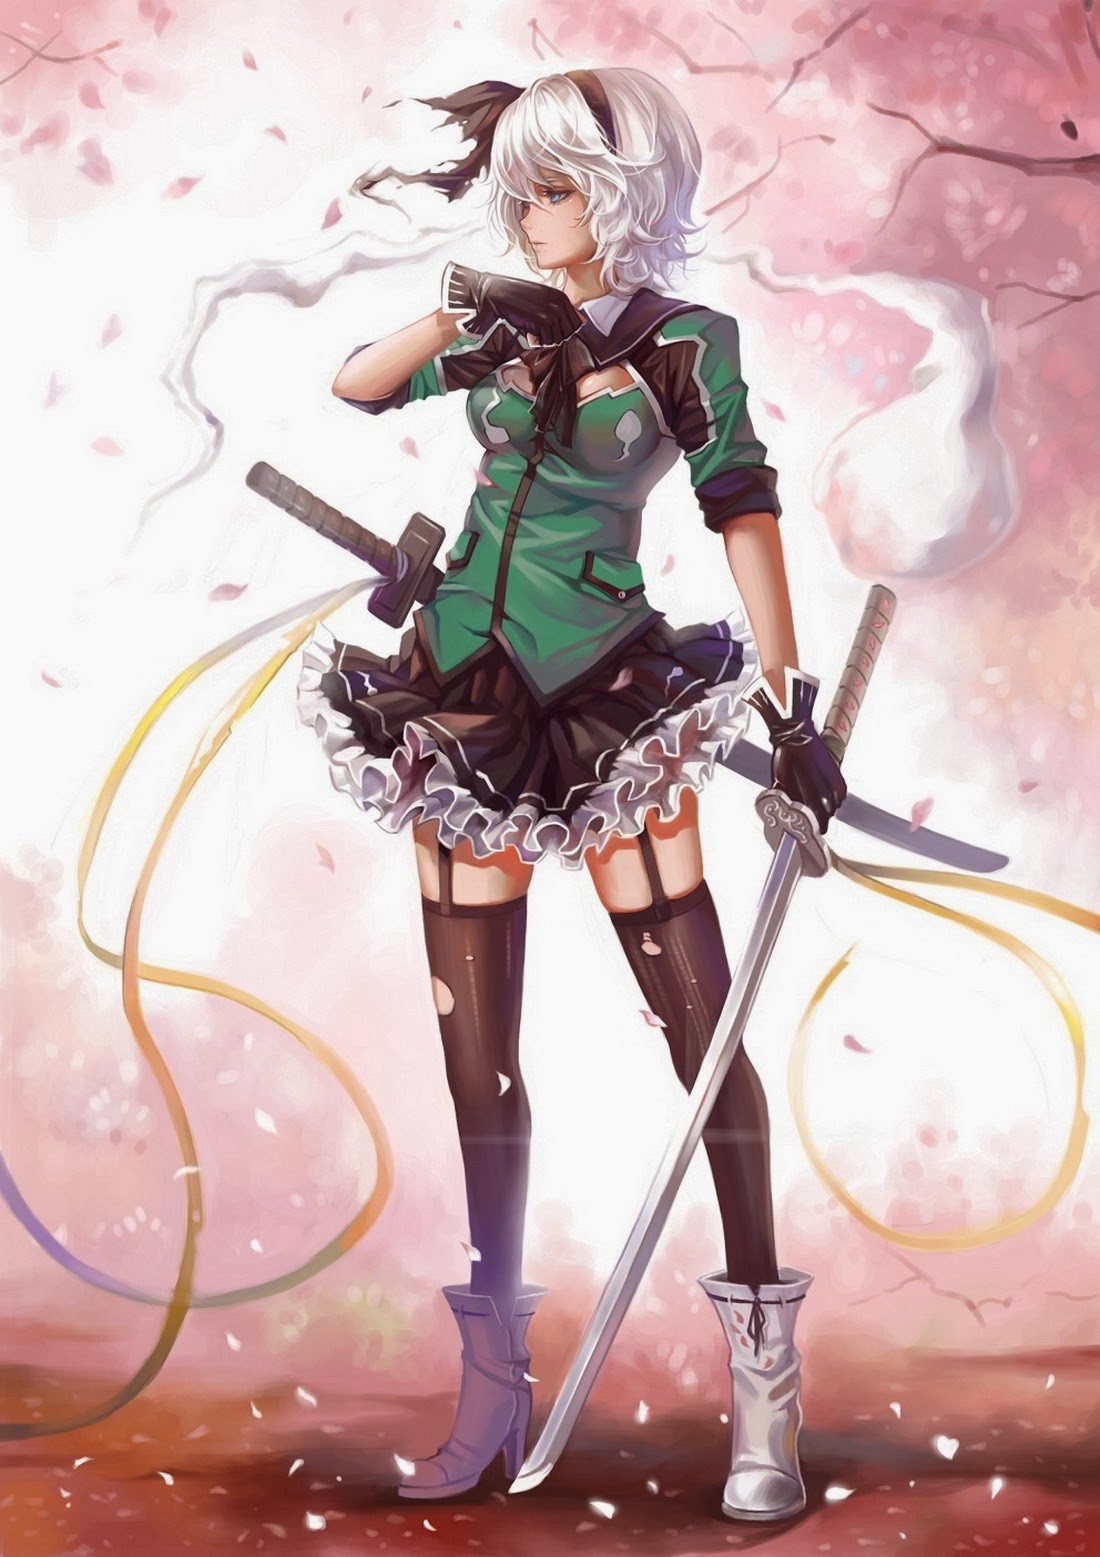 Anime 1100x1557 anime girls sword anime fantasy art fantasy girl women with swords weapon miniskirt stockings